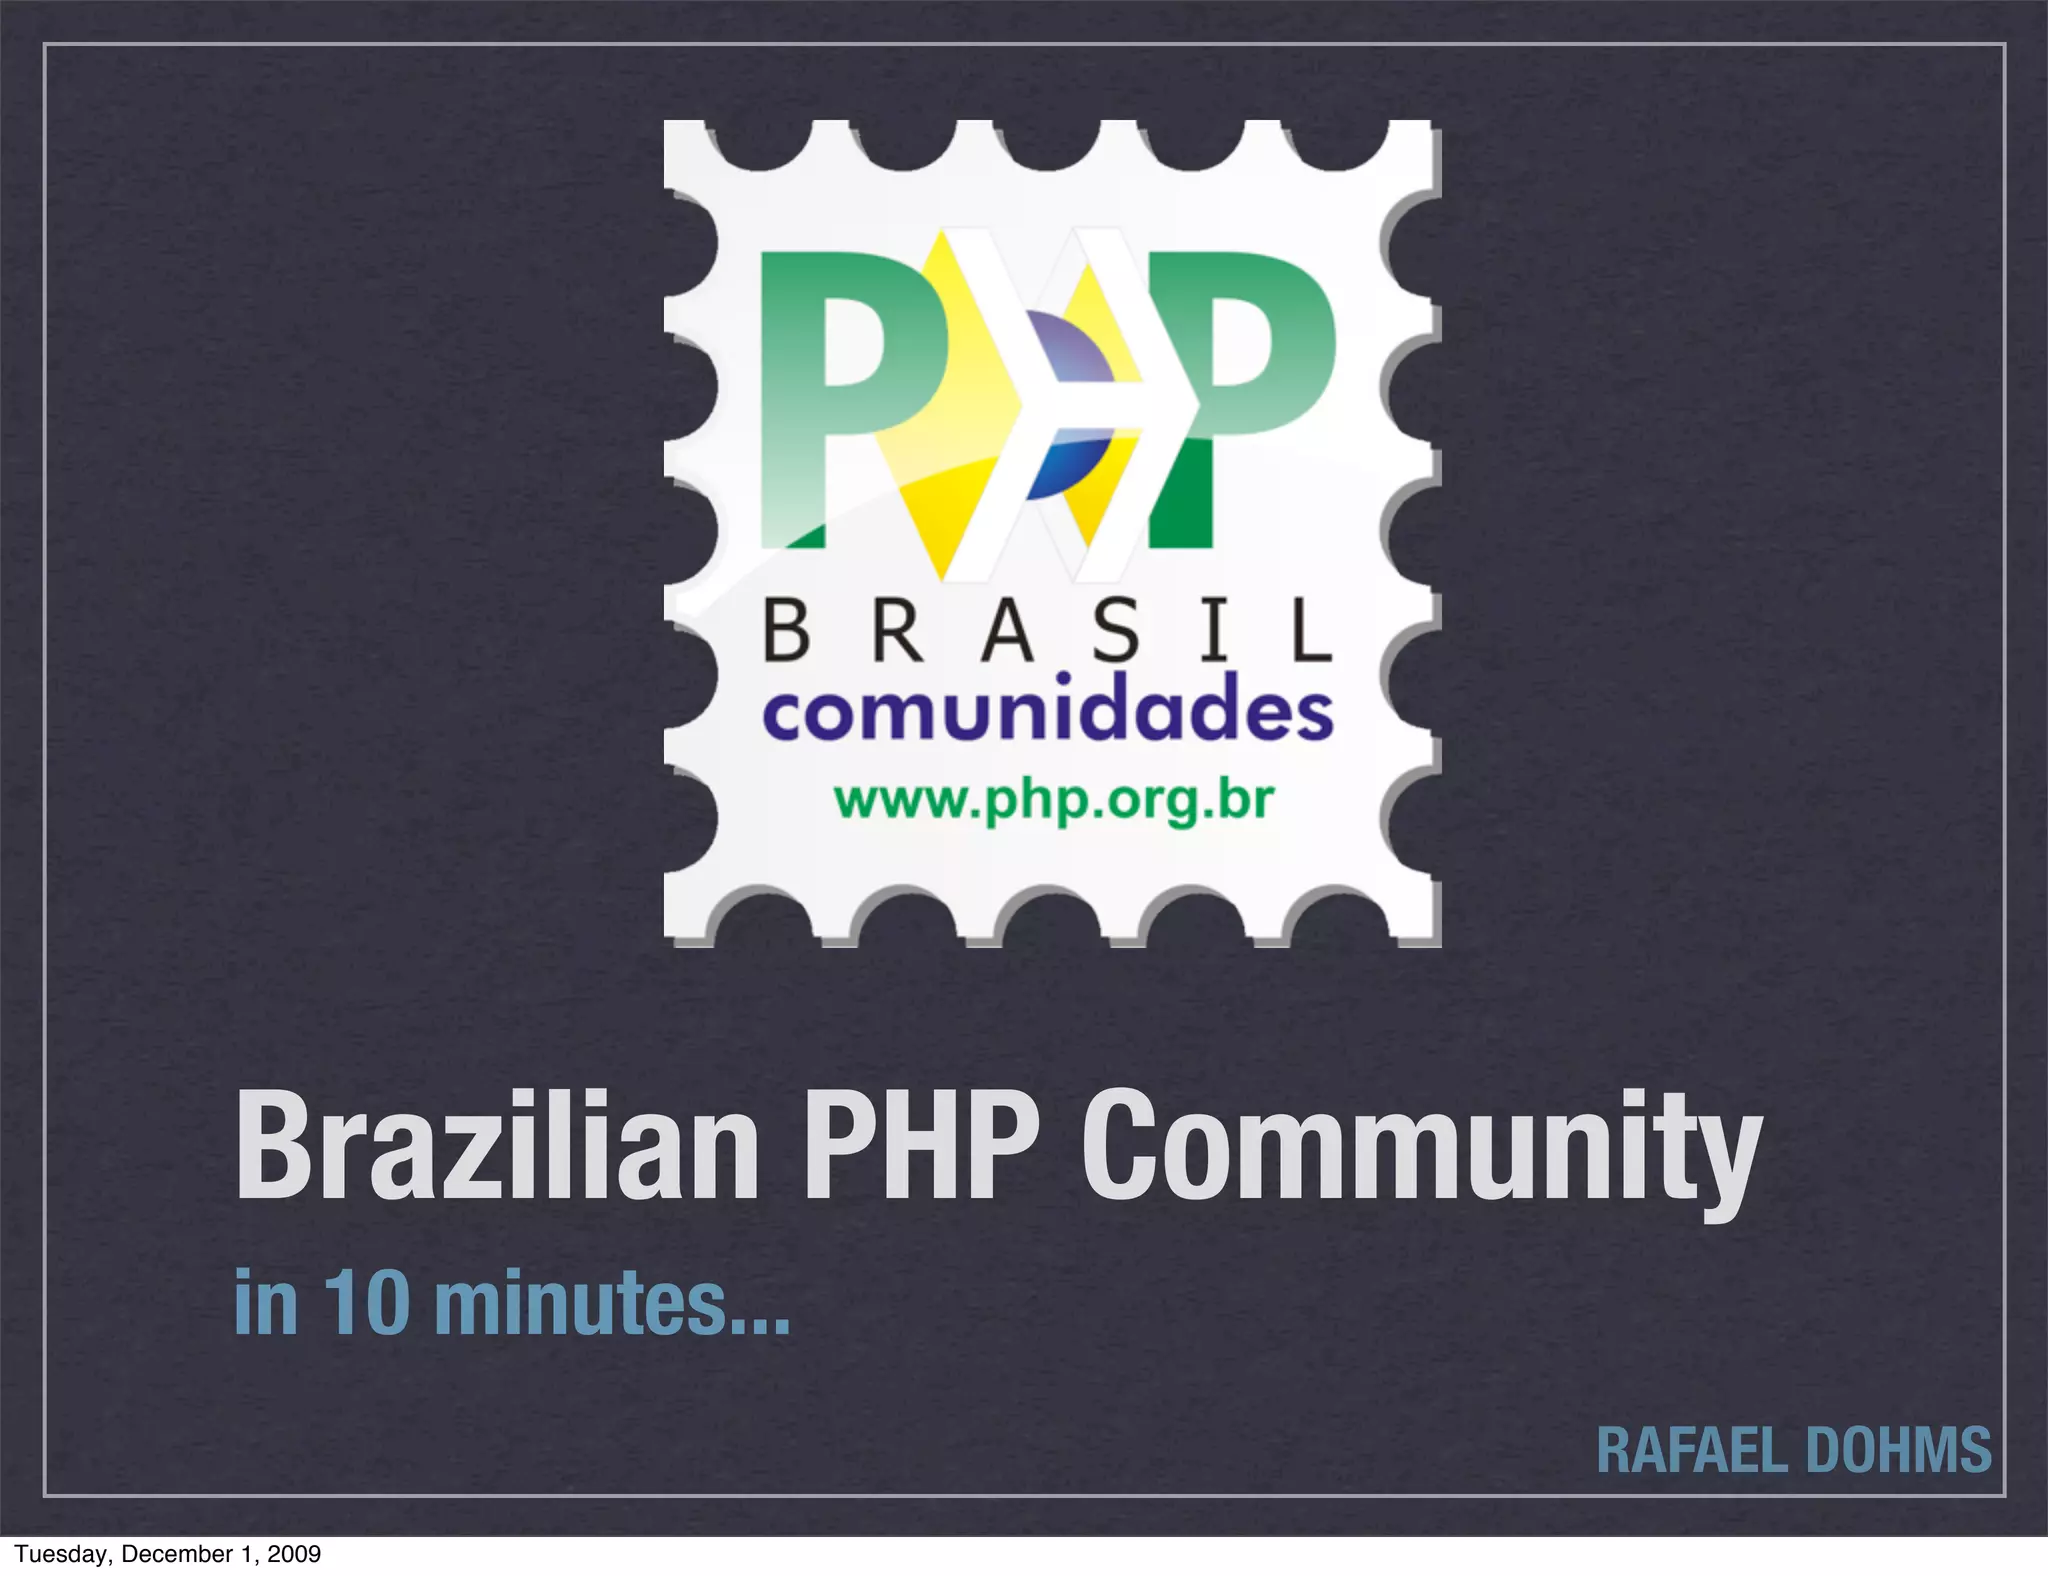 PHP Community in Brazil